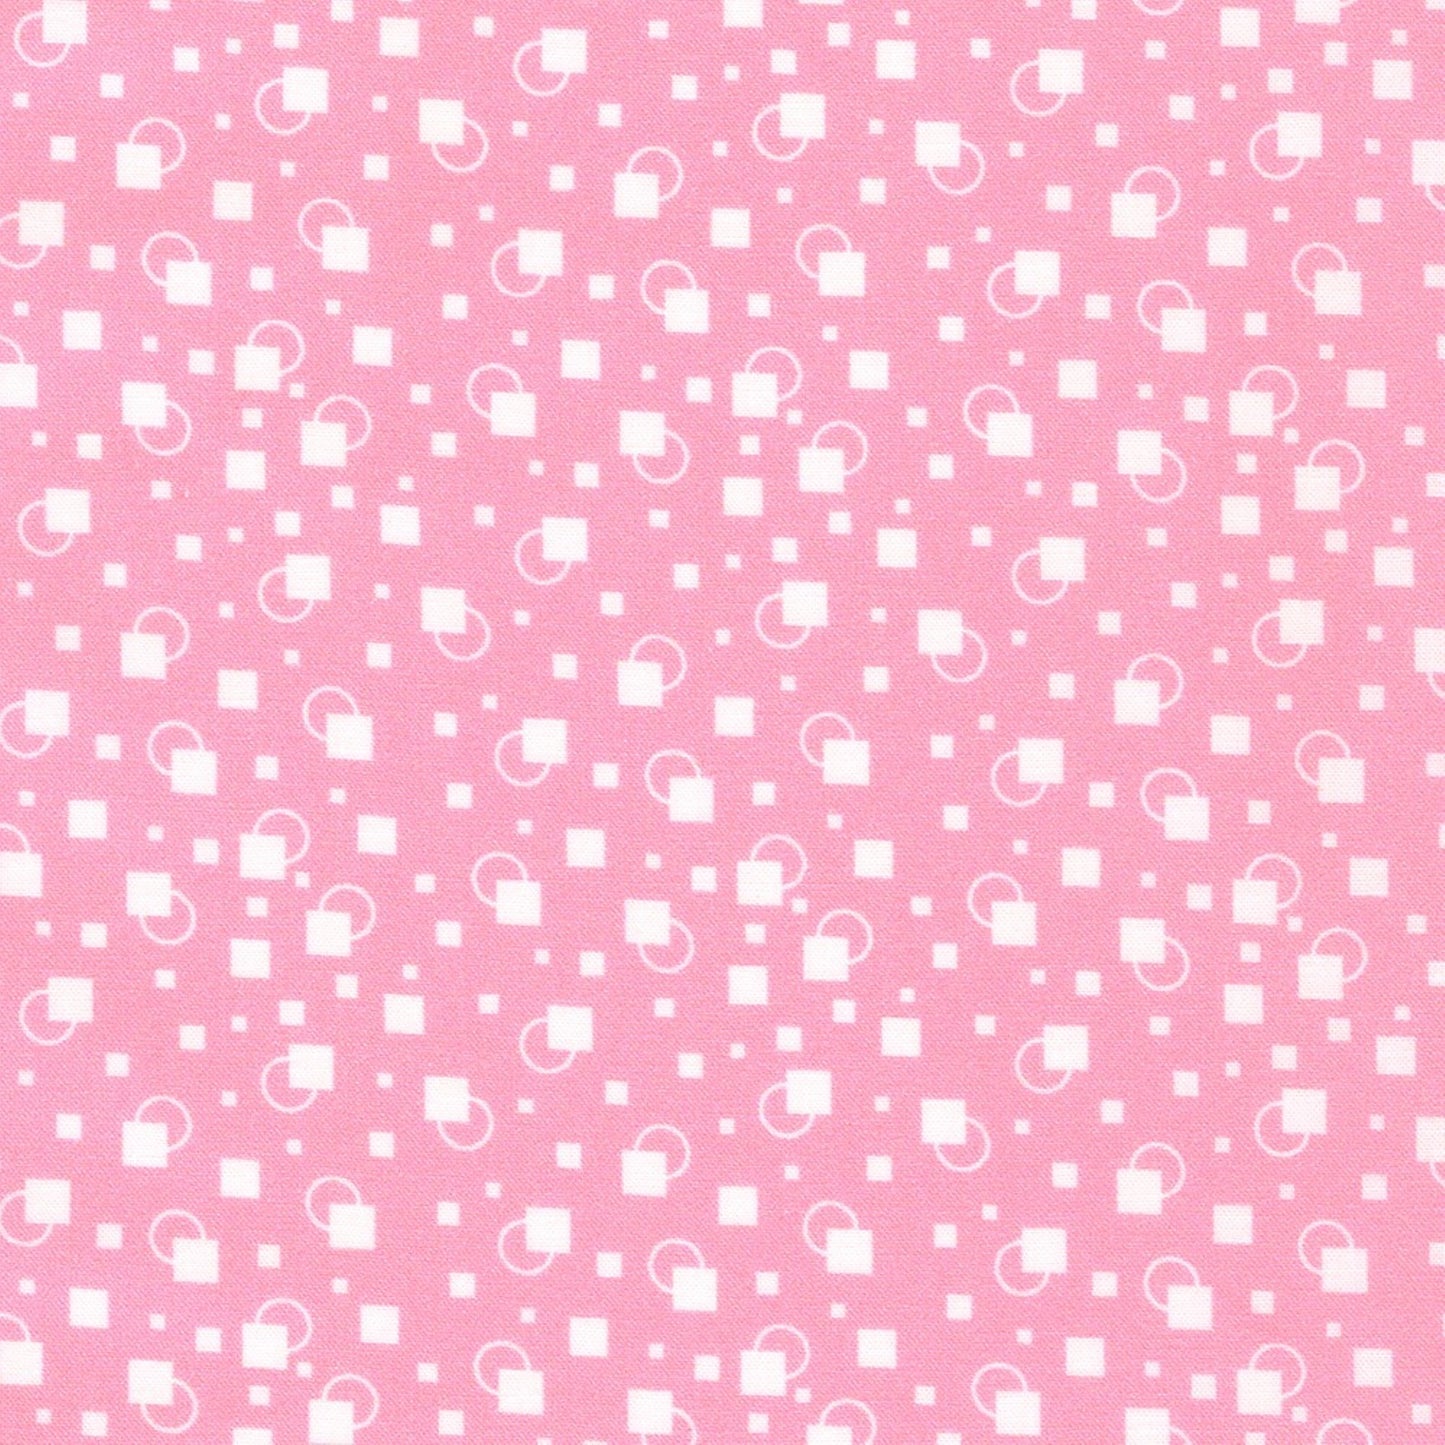 Little Blossoms Debbie Beaves 1930's reproduction bundle - 5 pink Fat Quarters Kaufman cotton quilt fabric